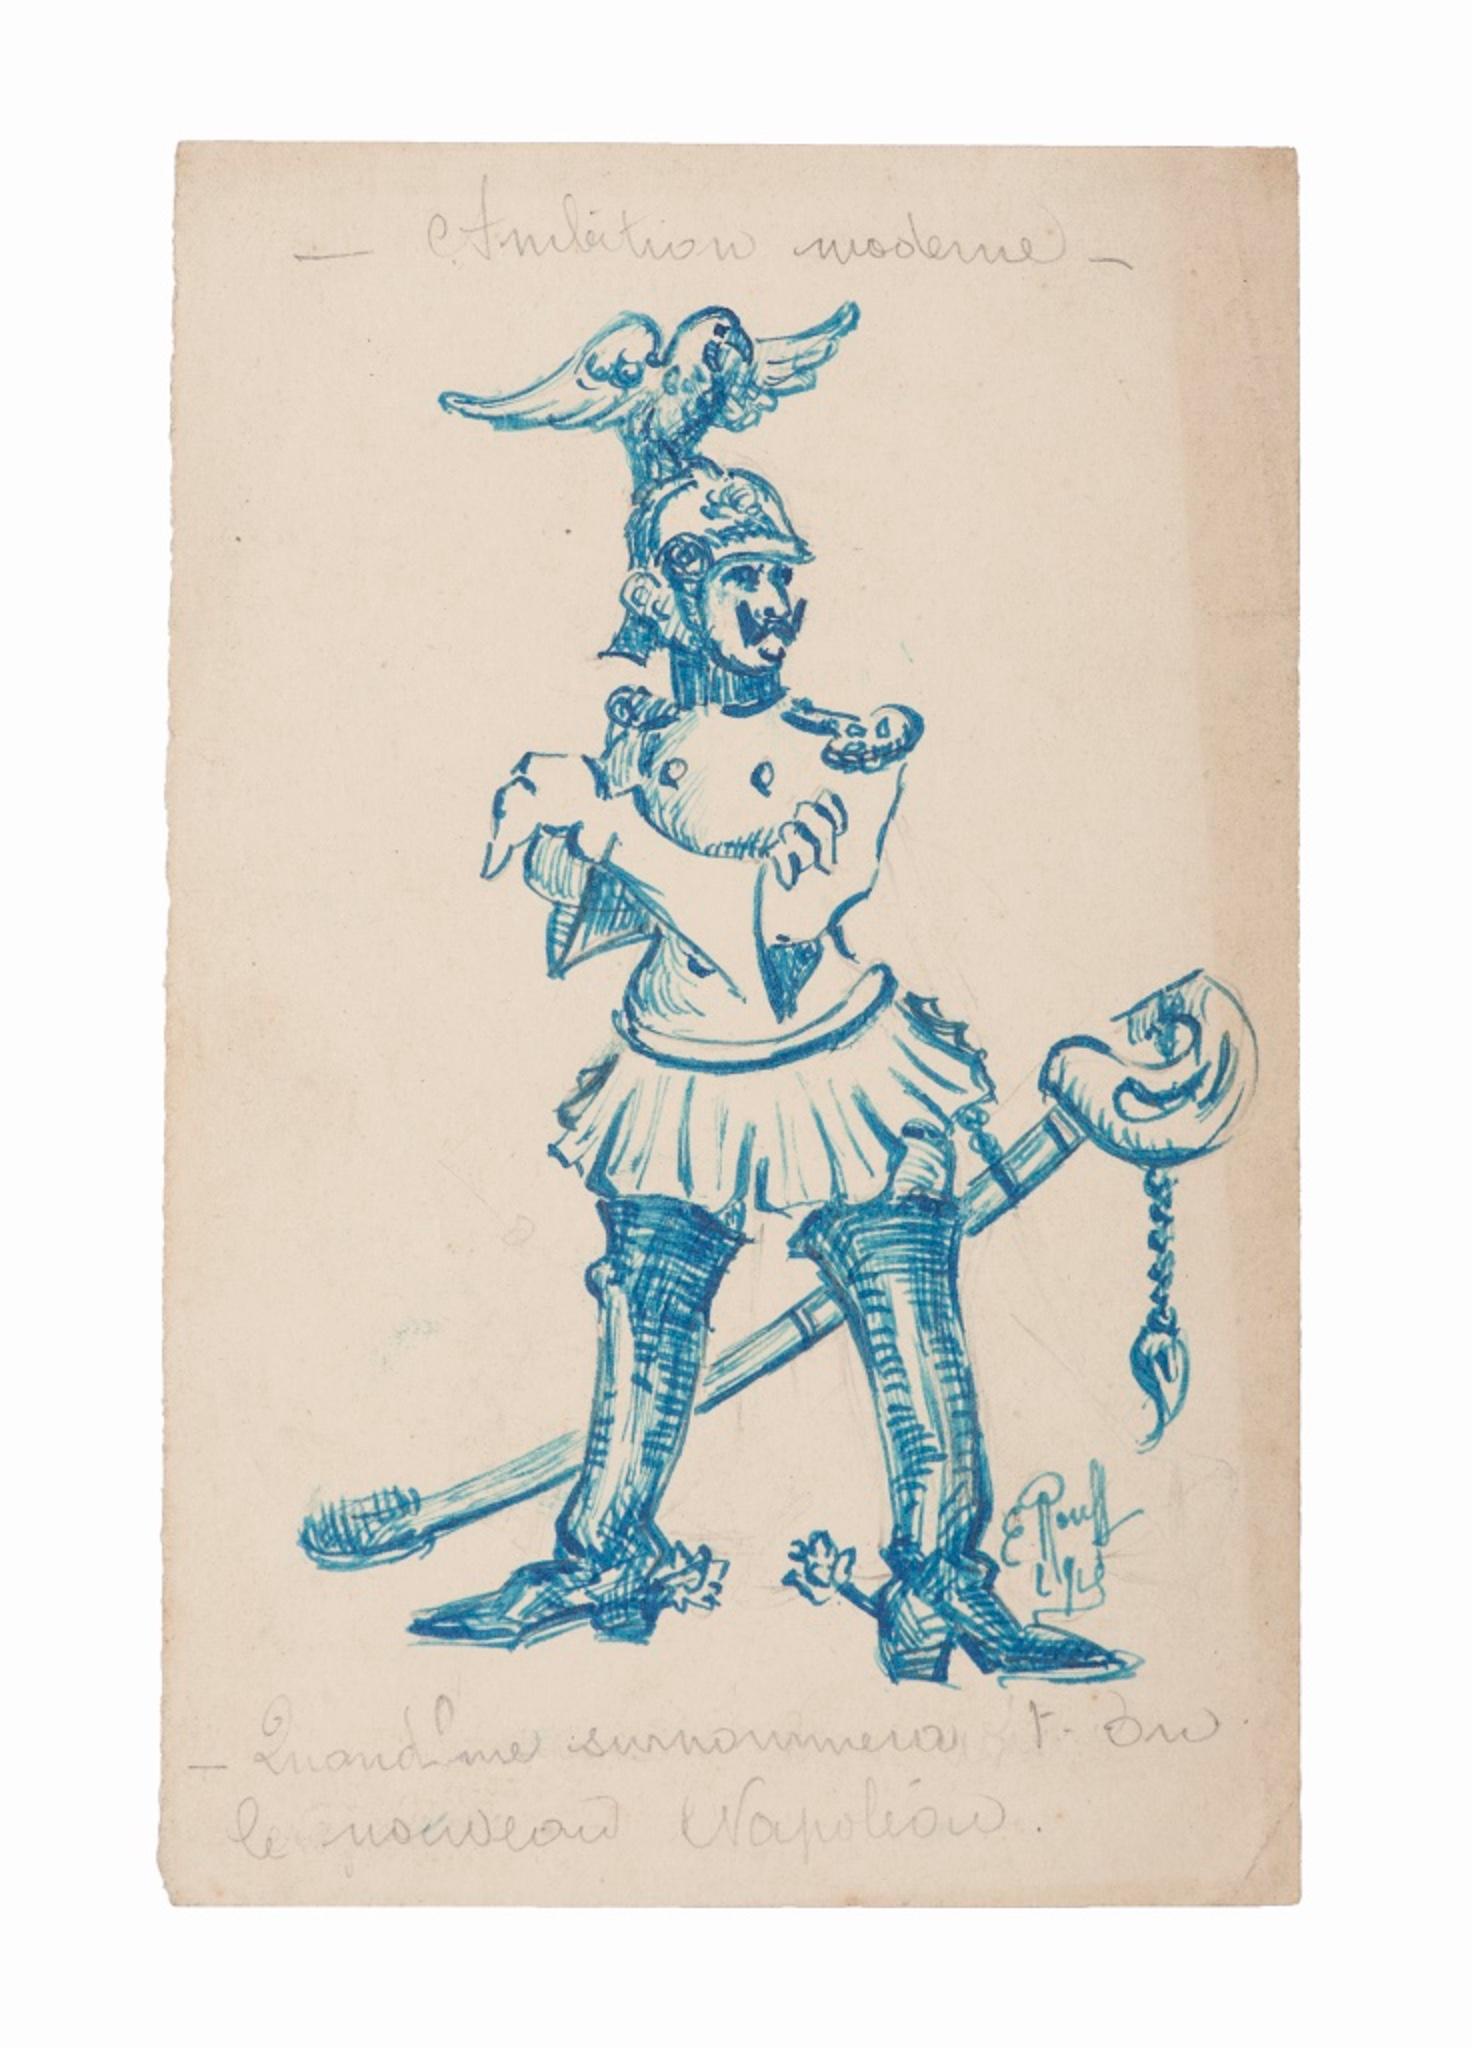 Le Nouveau Napoleon ist eine Original-Federzeichnung von Emile Rouff aus dem Jahr 1929.

Das kleine Bild ist in gutem Zustand auf vergilbtem Papier.

Einige Bleistiftnotizen oben und unten auf der Zeichnung.